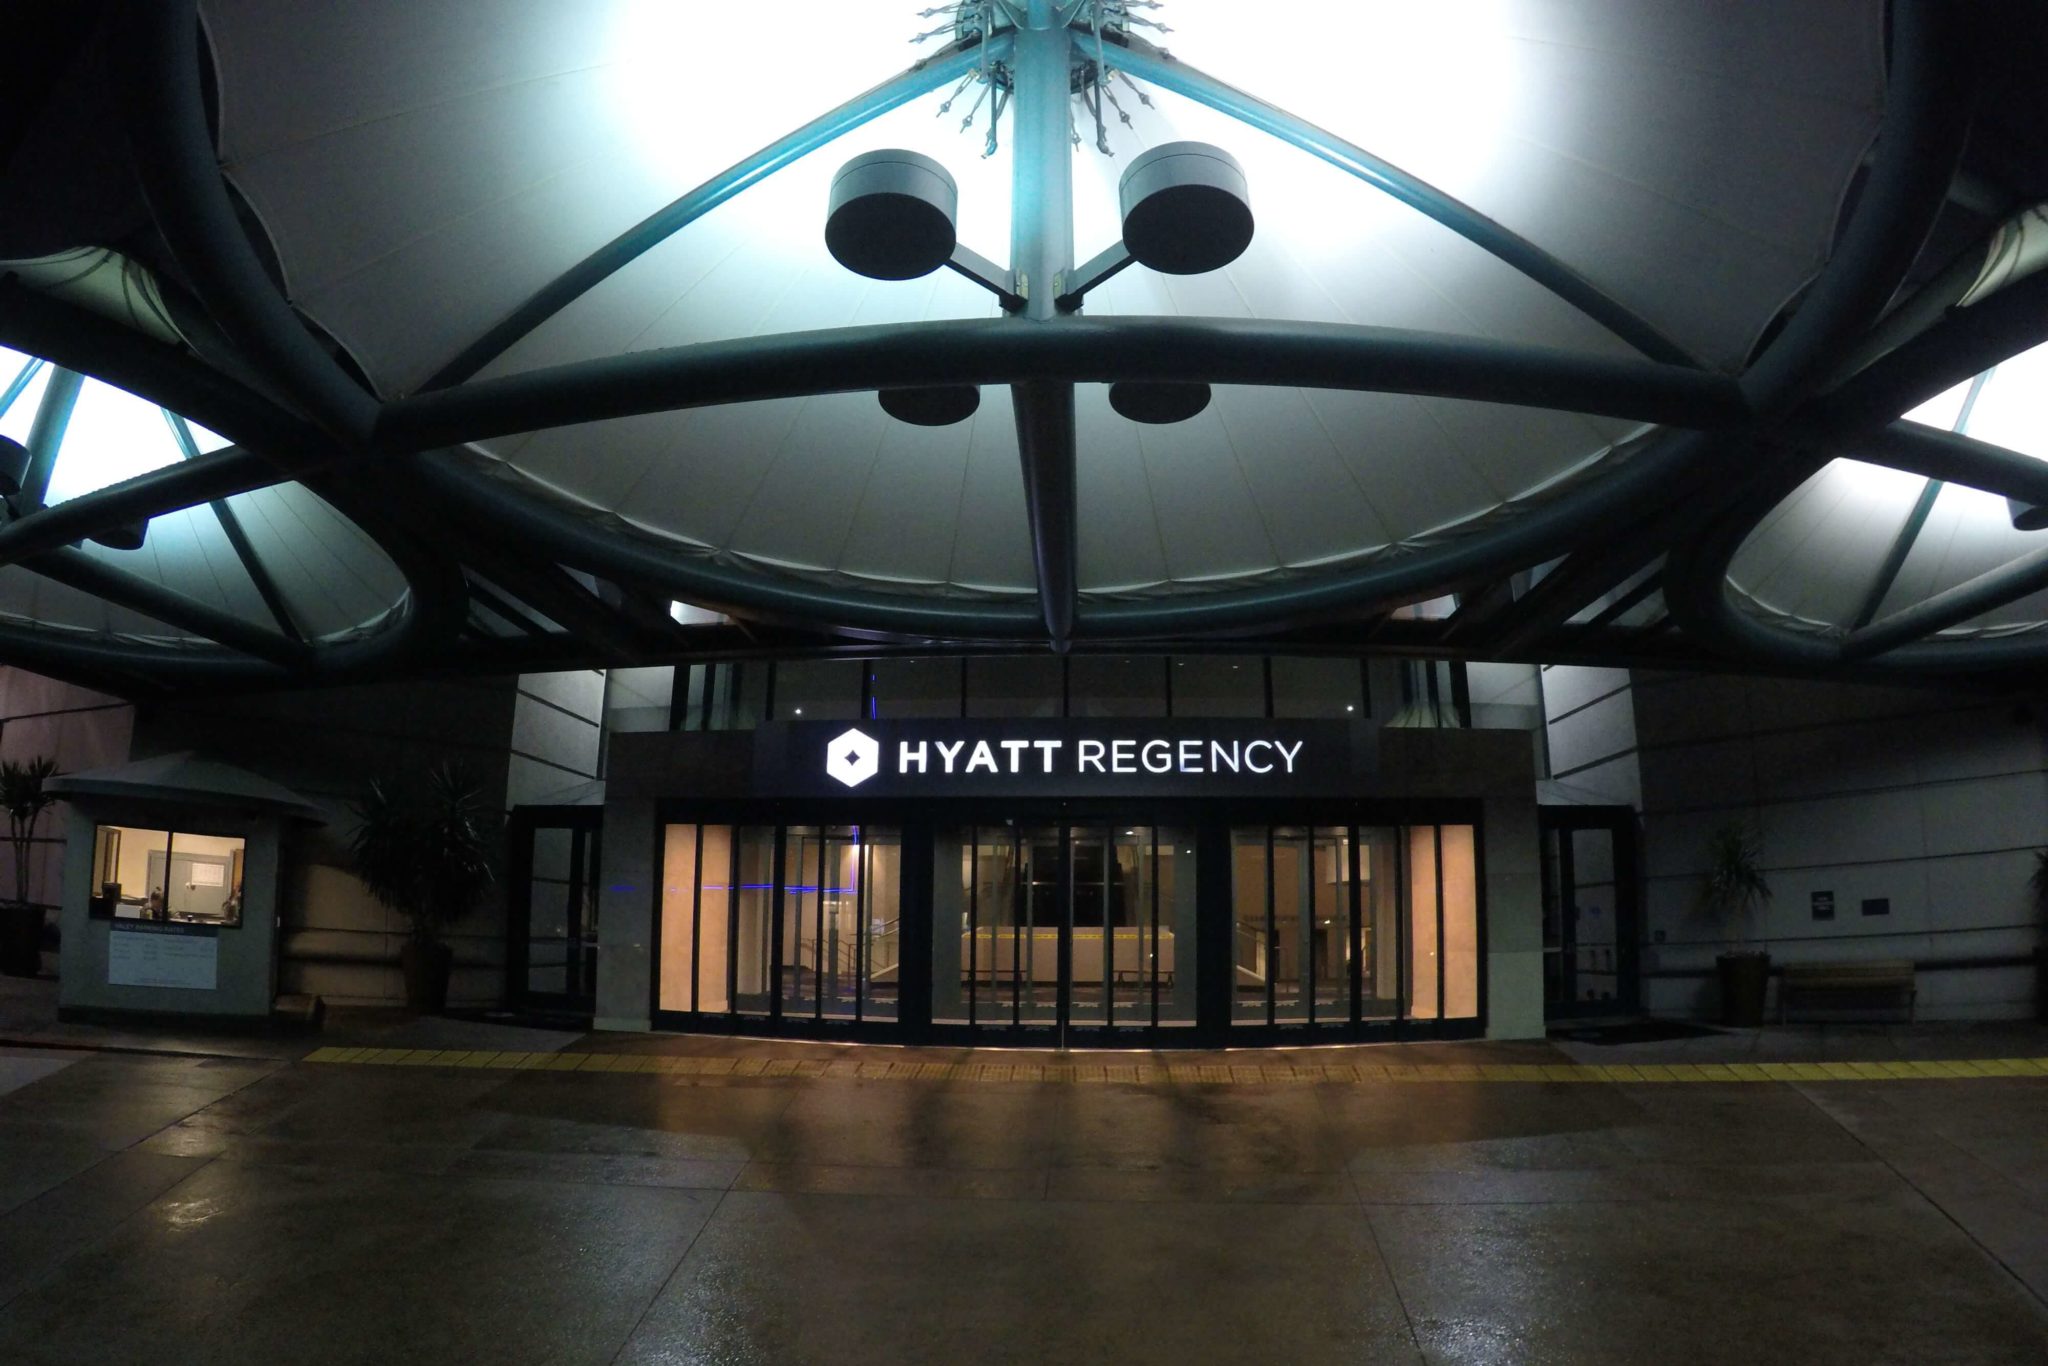 Hotel Hyatt Regency aeropuerto de San Francisco